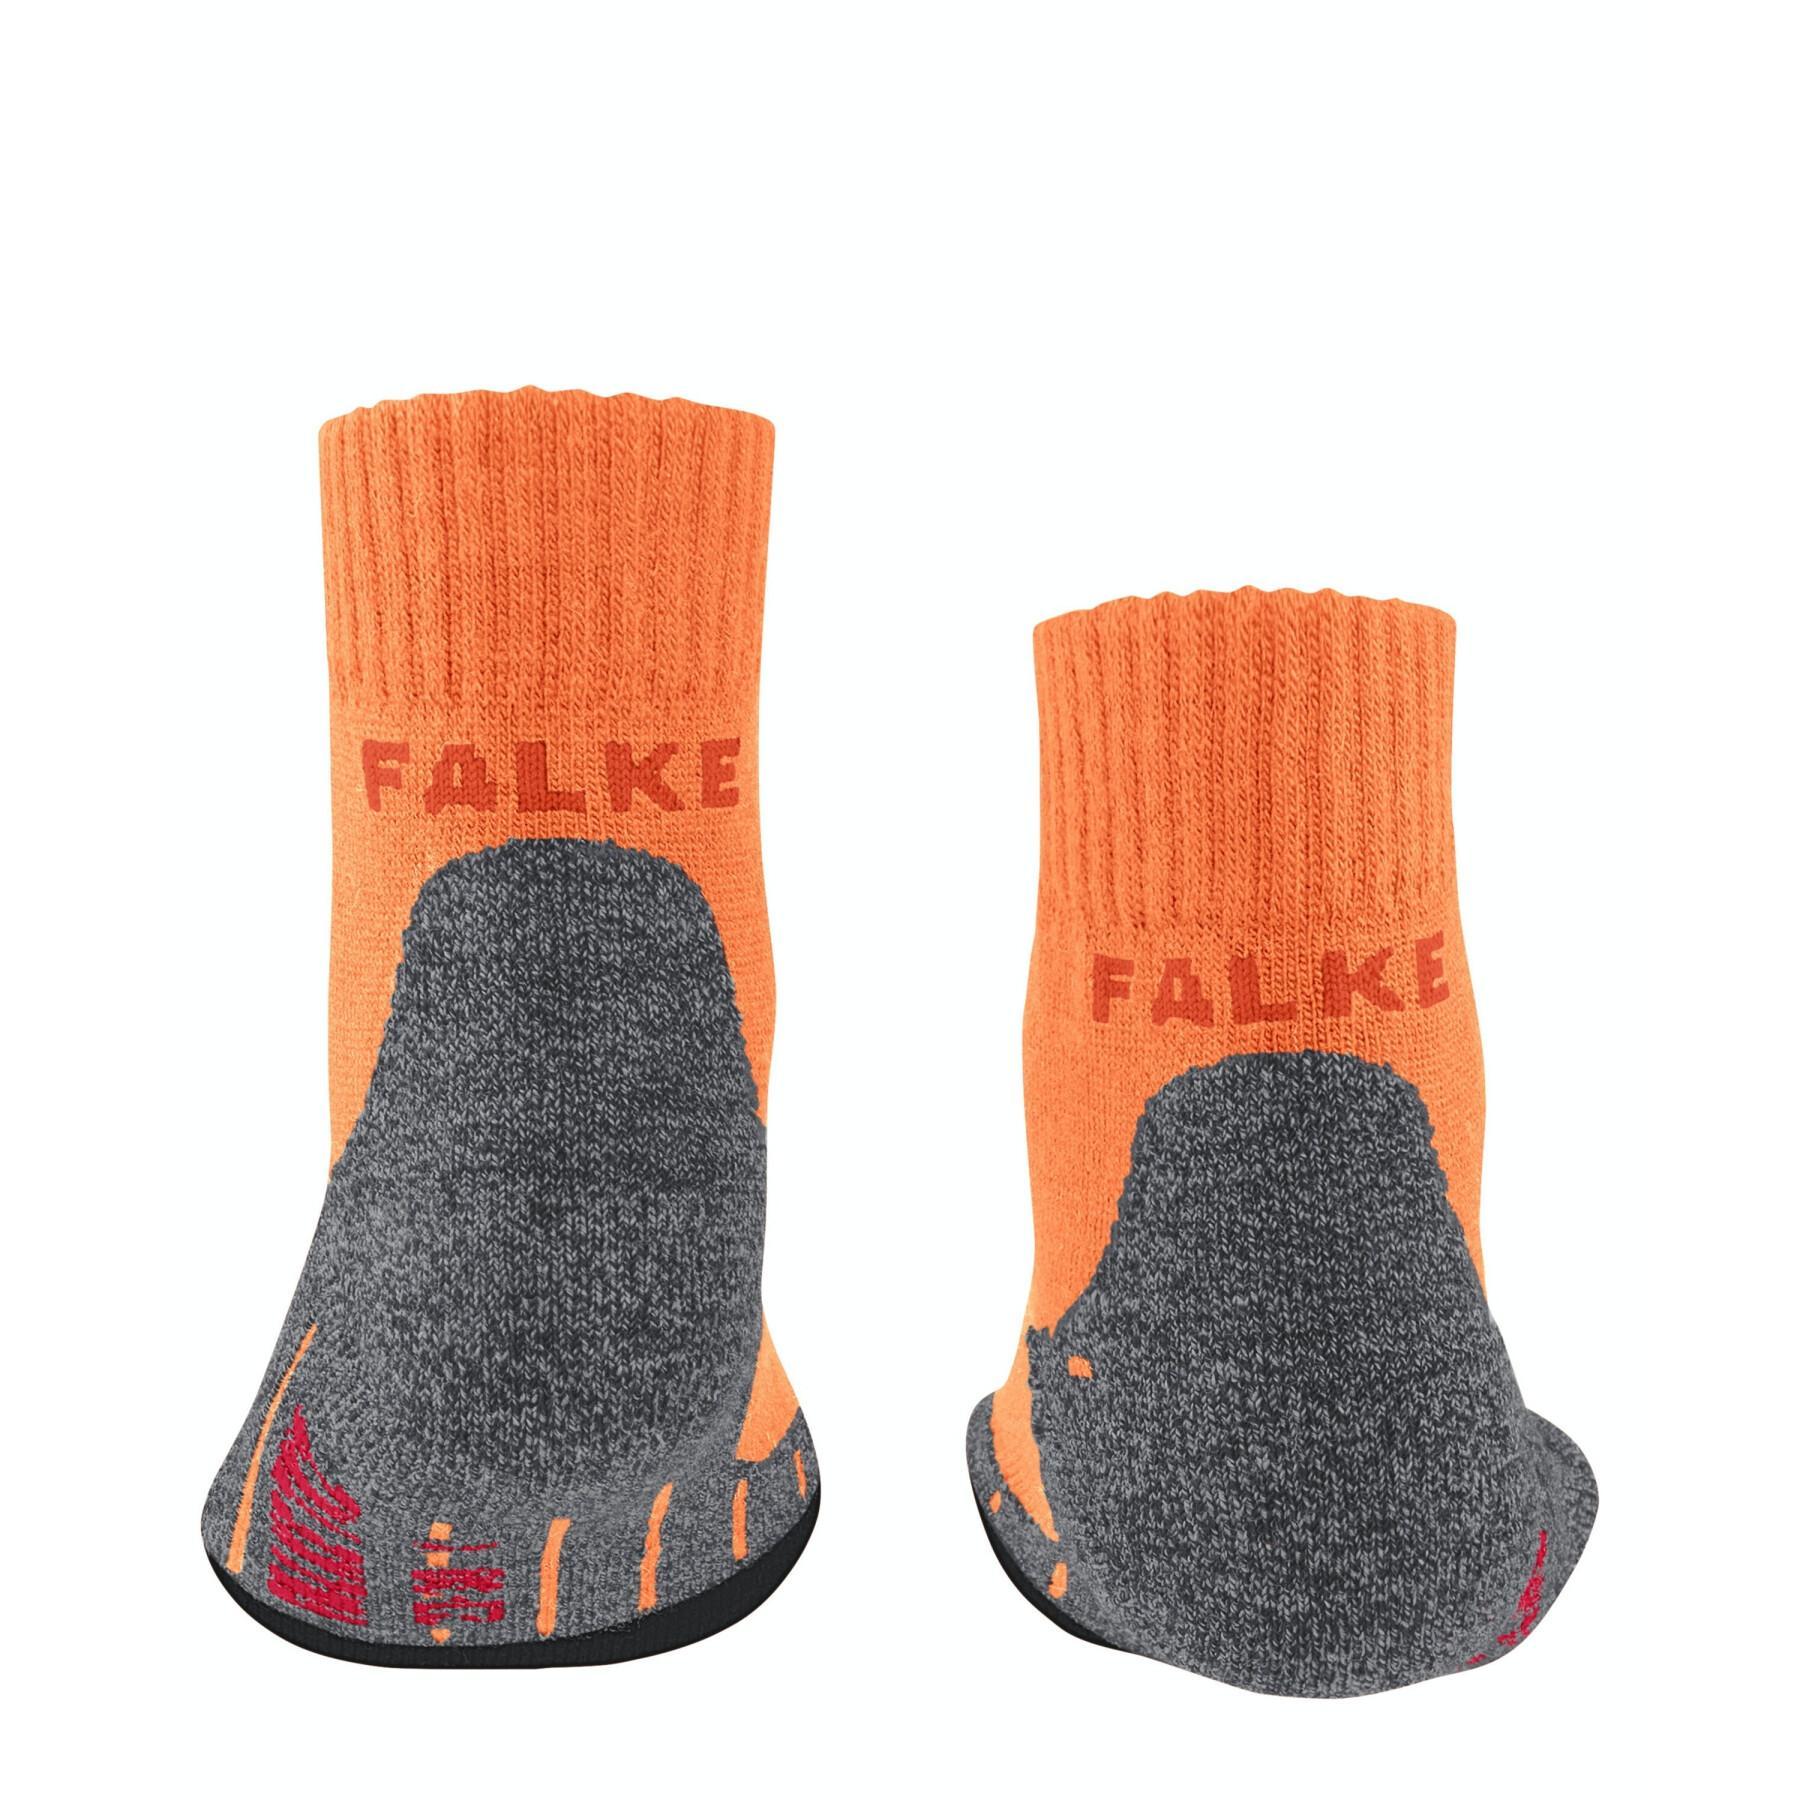 Children's short socks Falke TK2